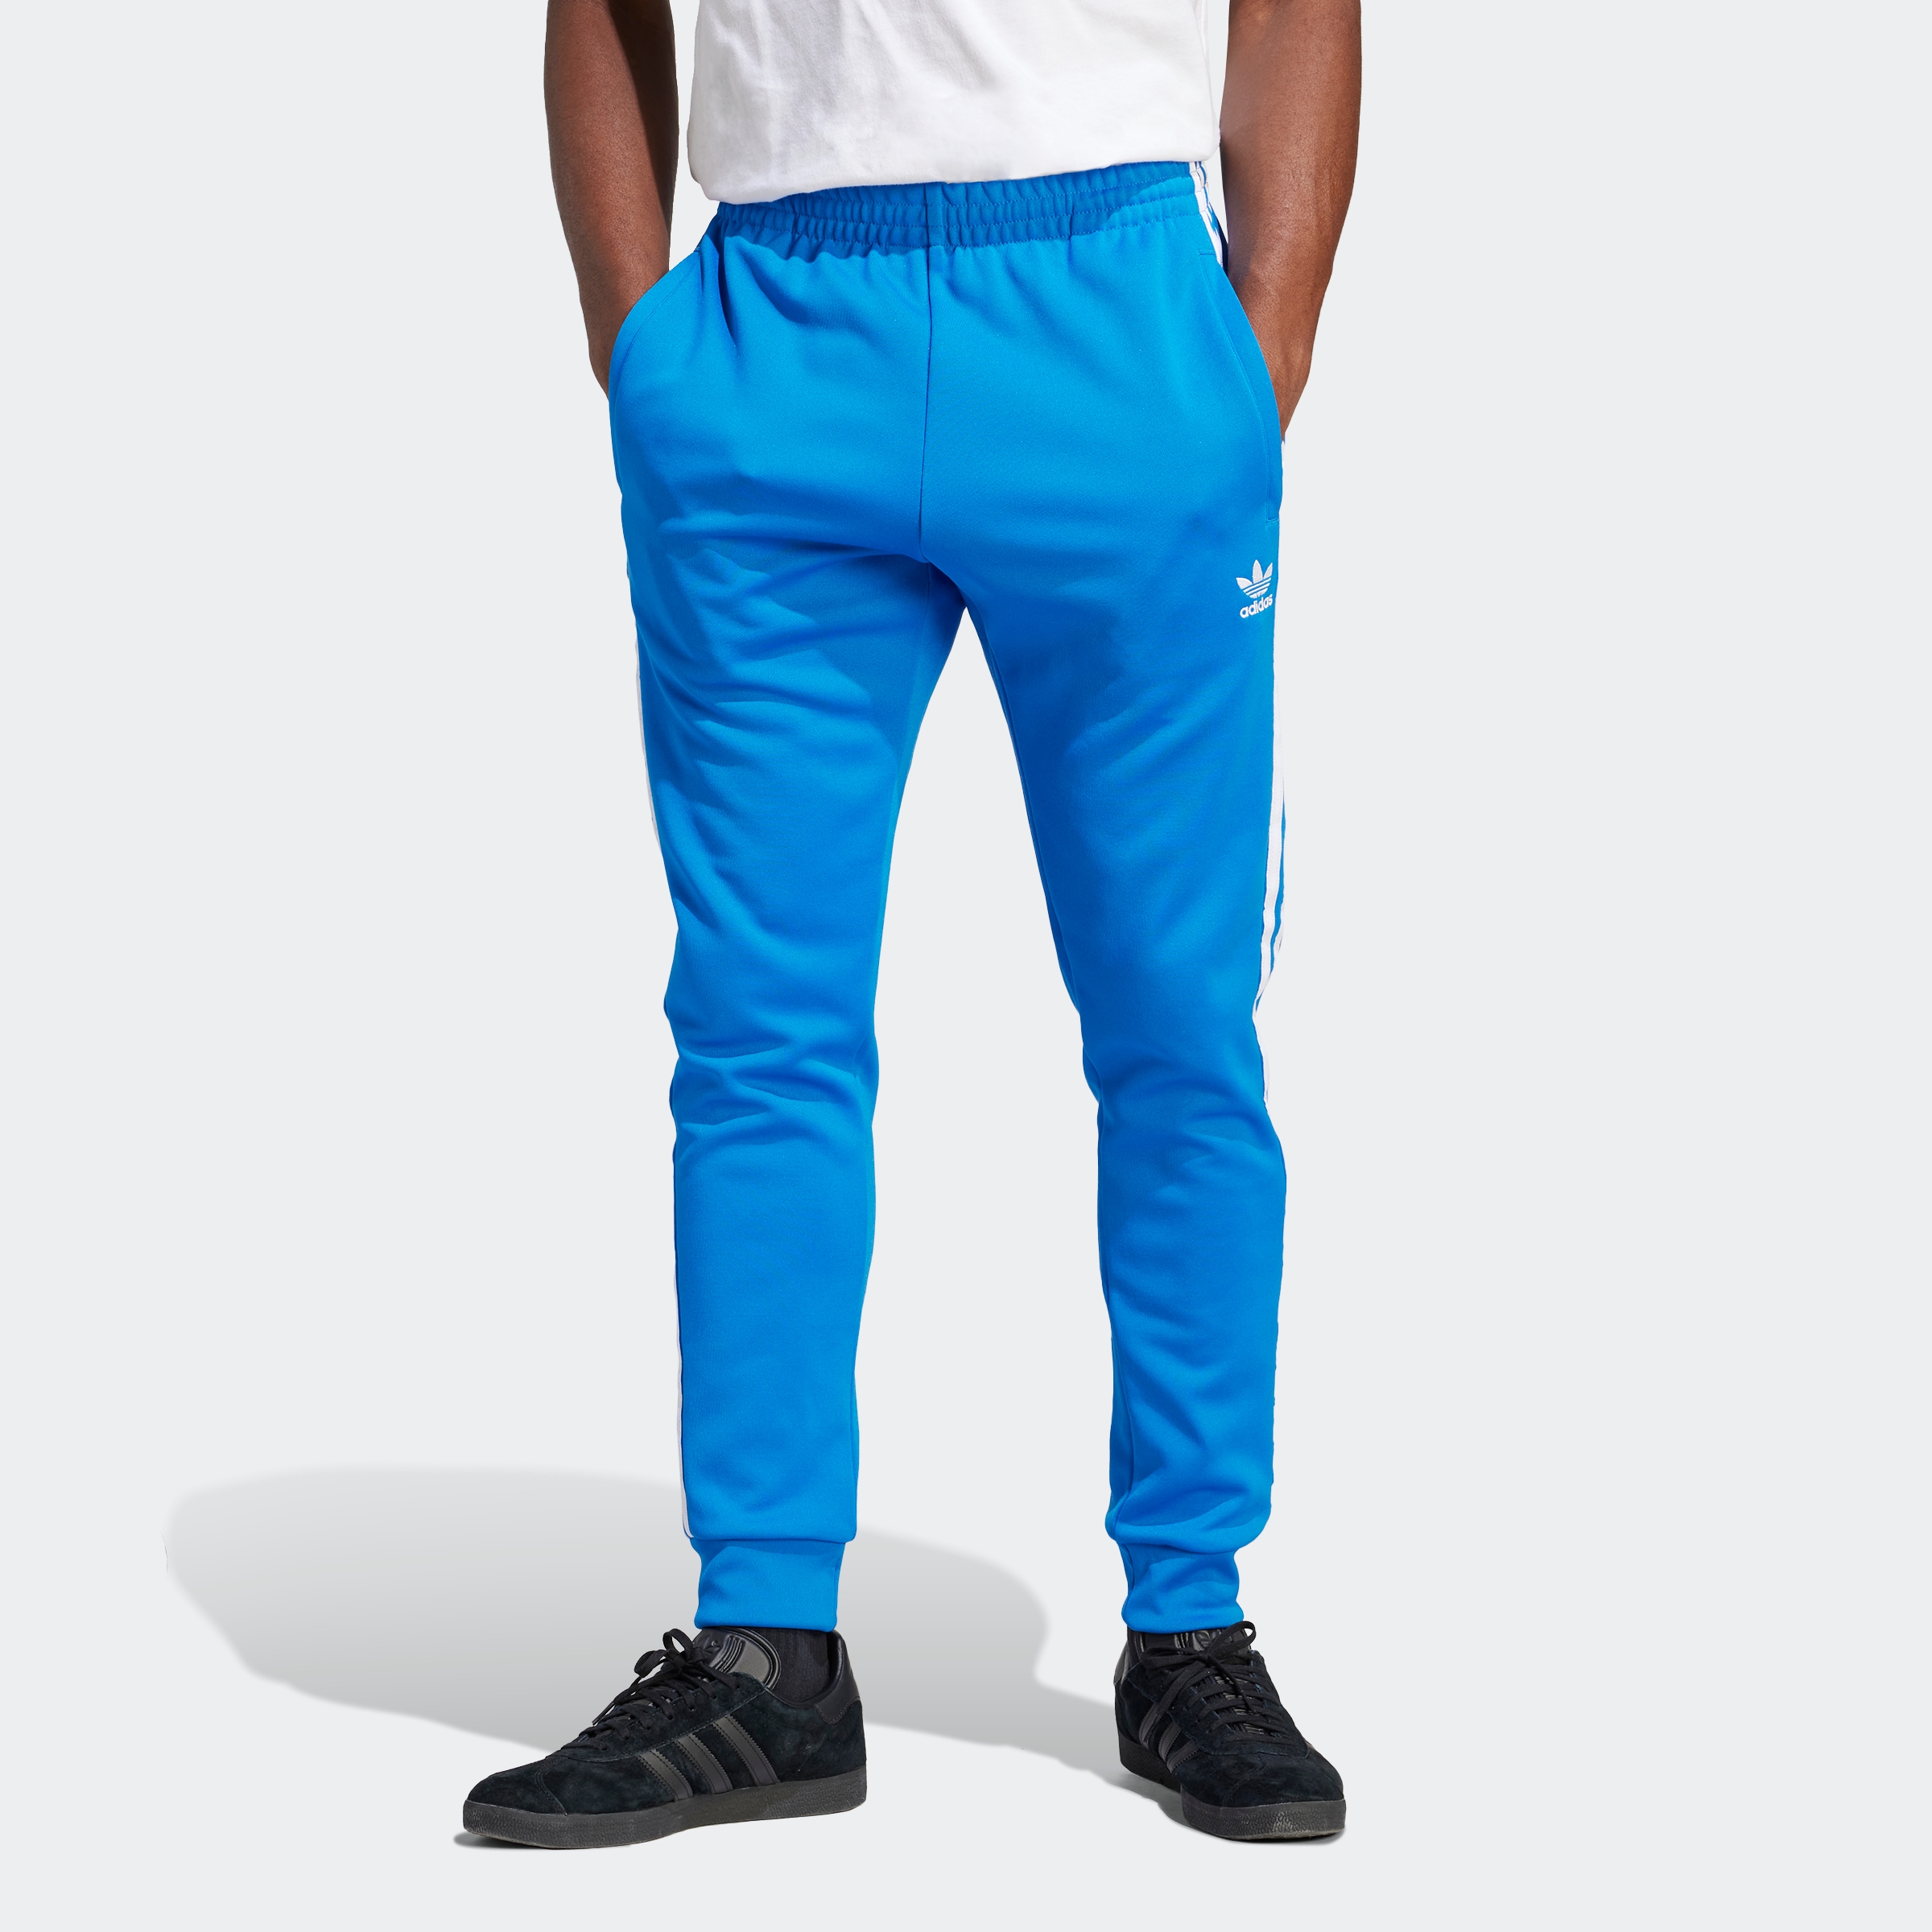 Adidas Originals Hosen & Shorts für Herren